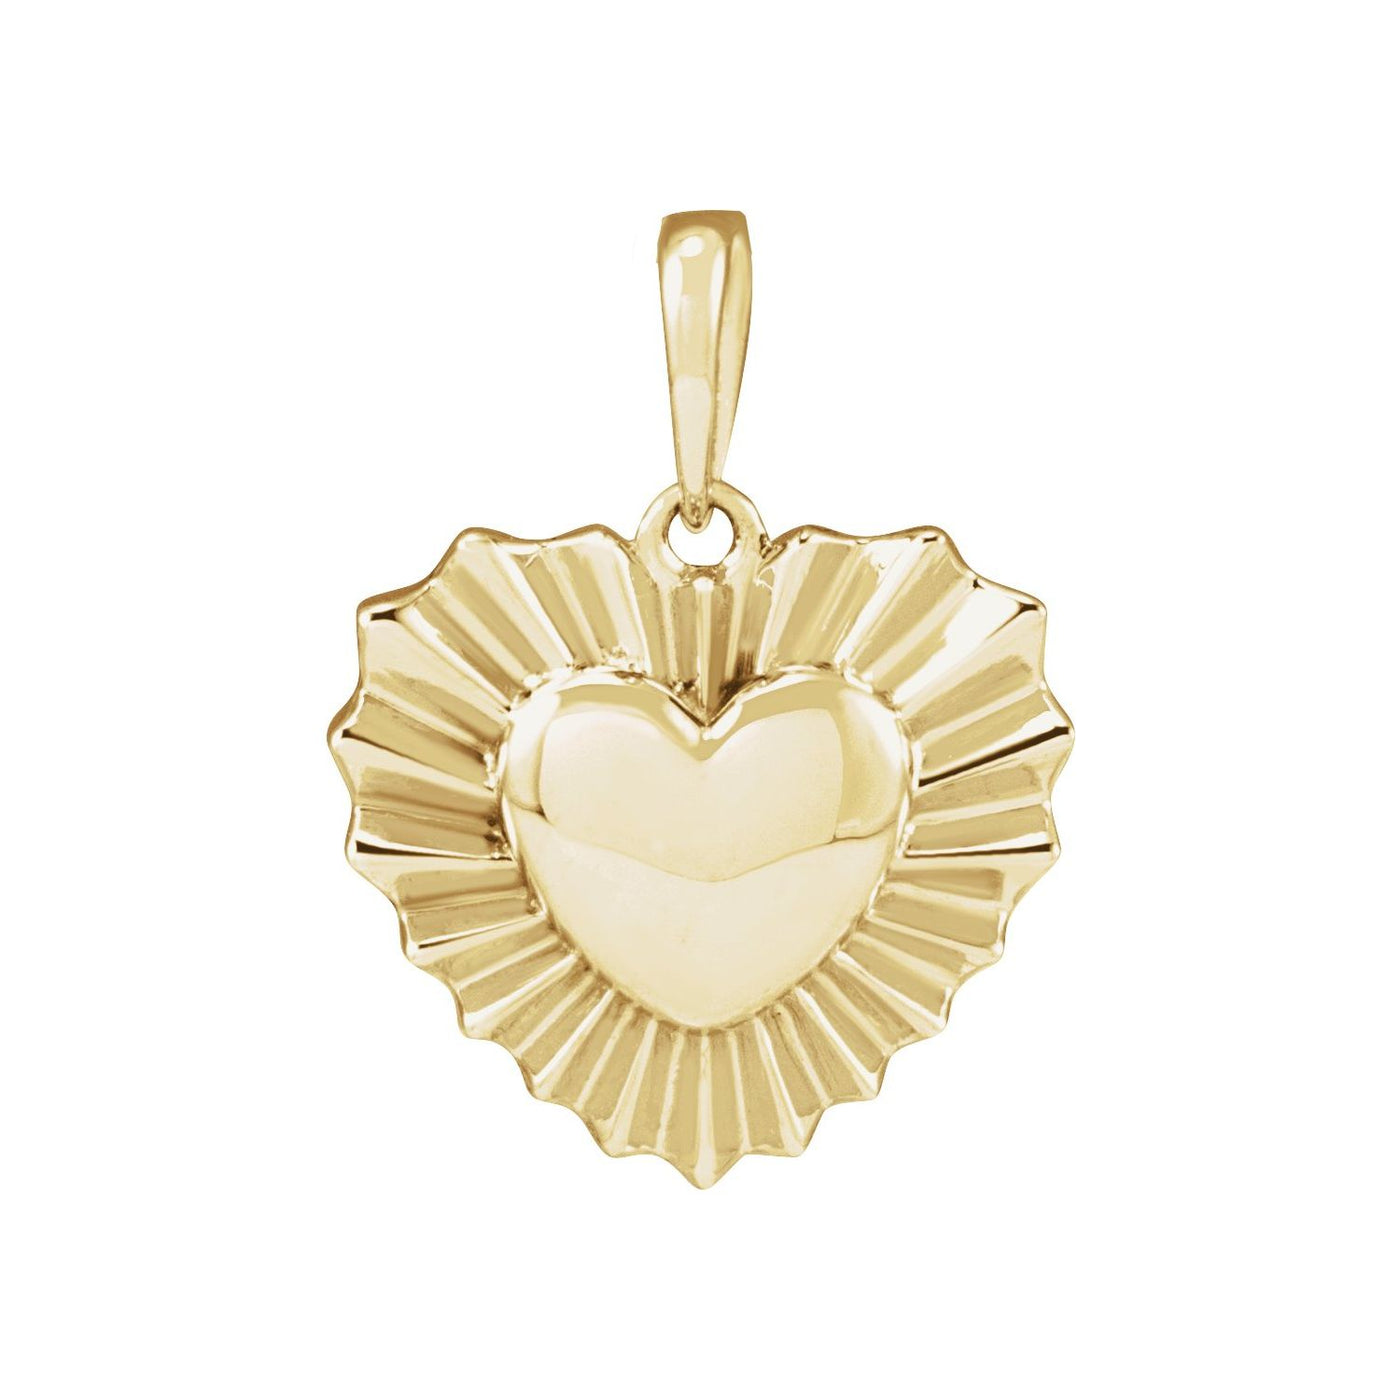 14k Gold Starburst Heart Pendant